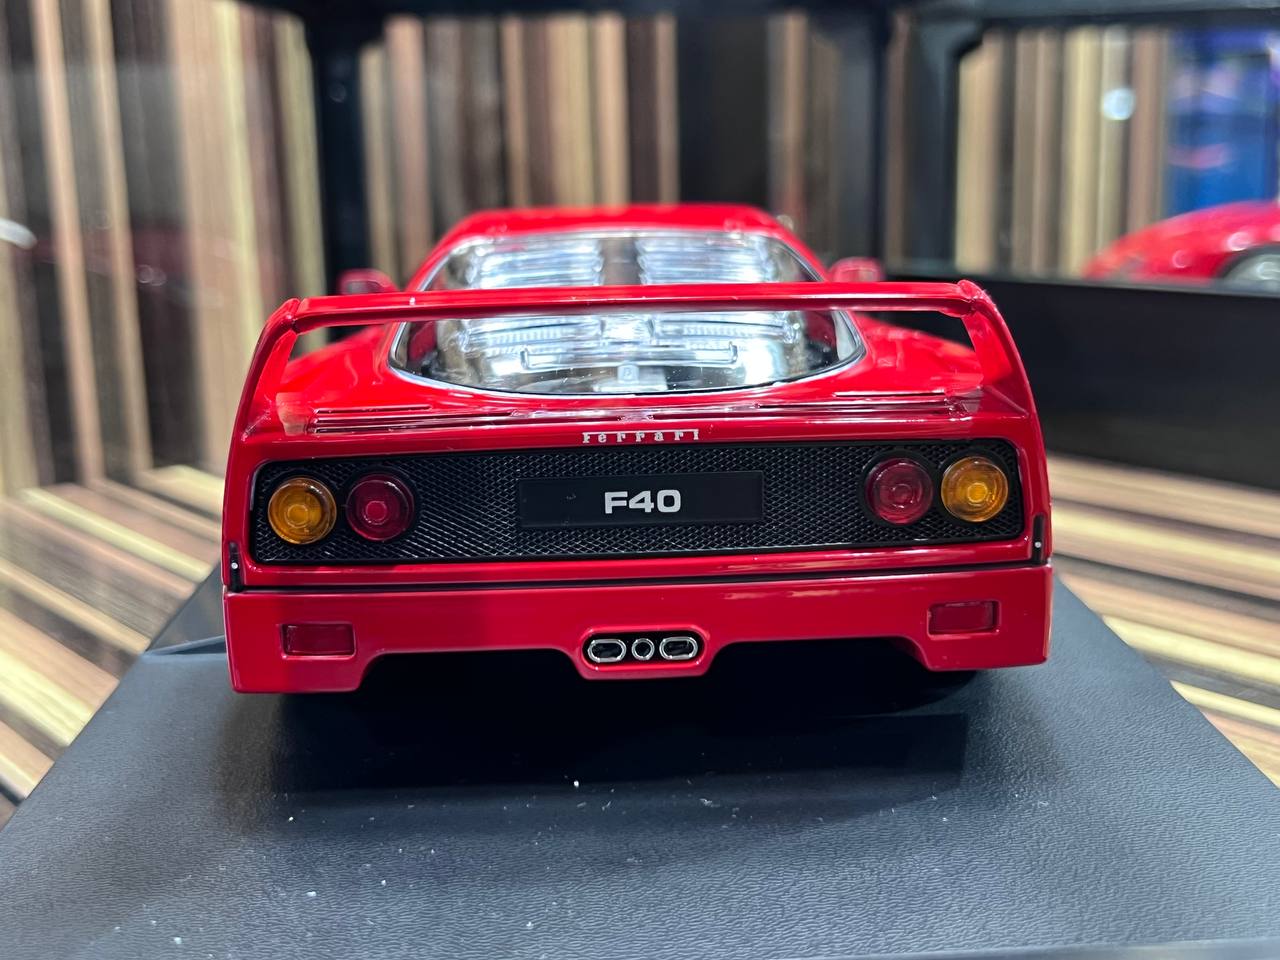 1/18 Ferrari F40 Red by KK Models